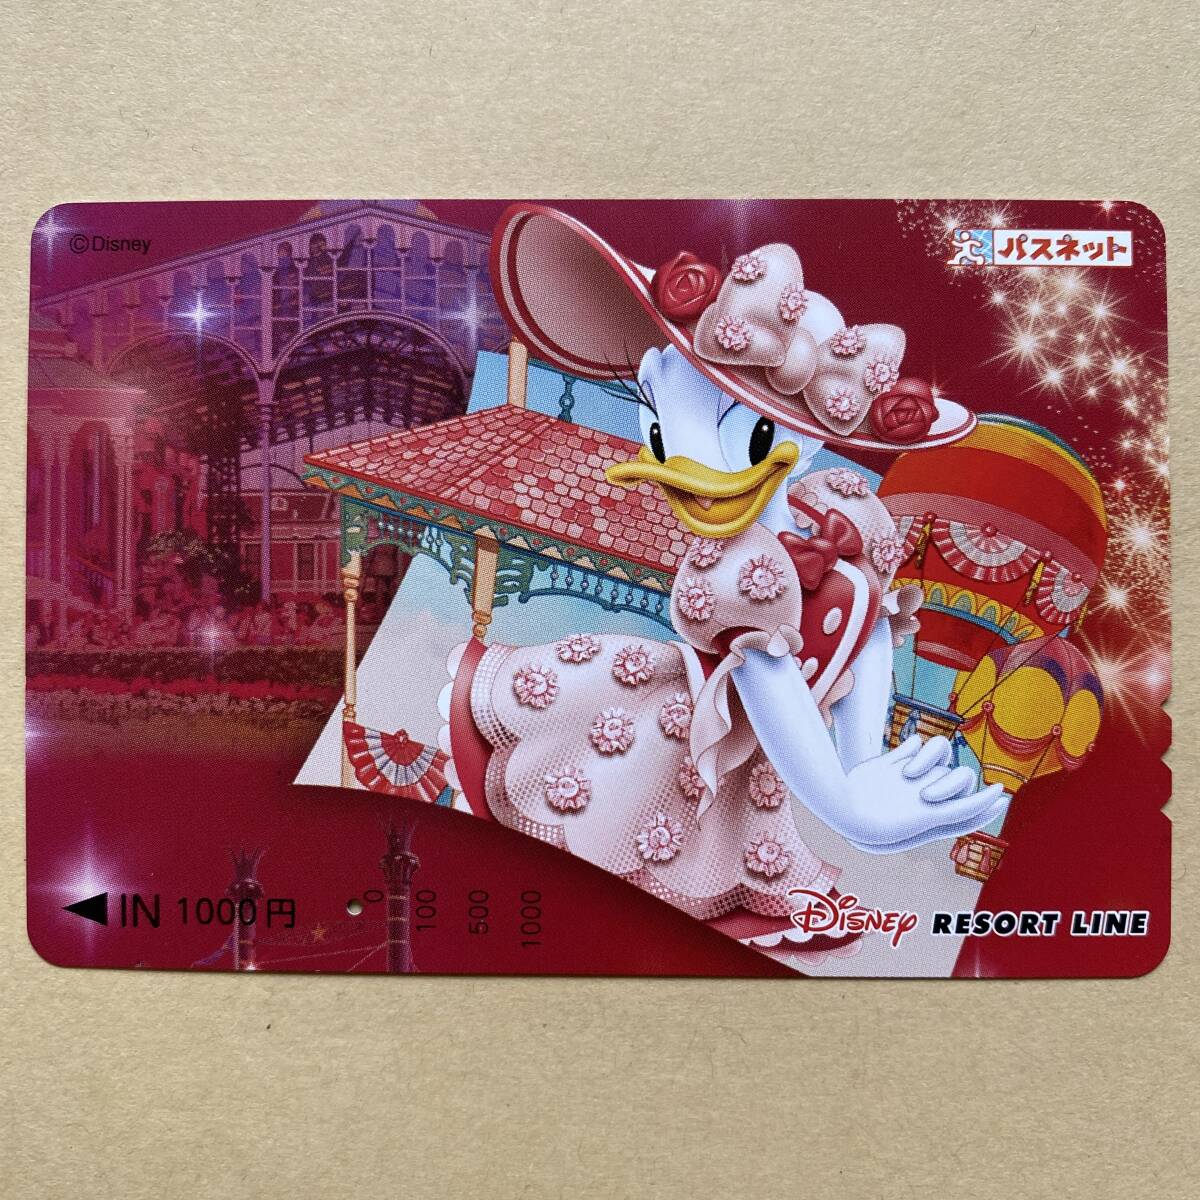 [ использованный ] Pas сеть Mai . resort линия Disney resort линия Дэйзи * Duck Tokyo Disney Land 20 anniversary commemoration 